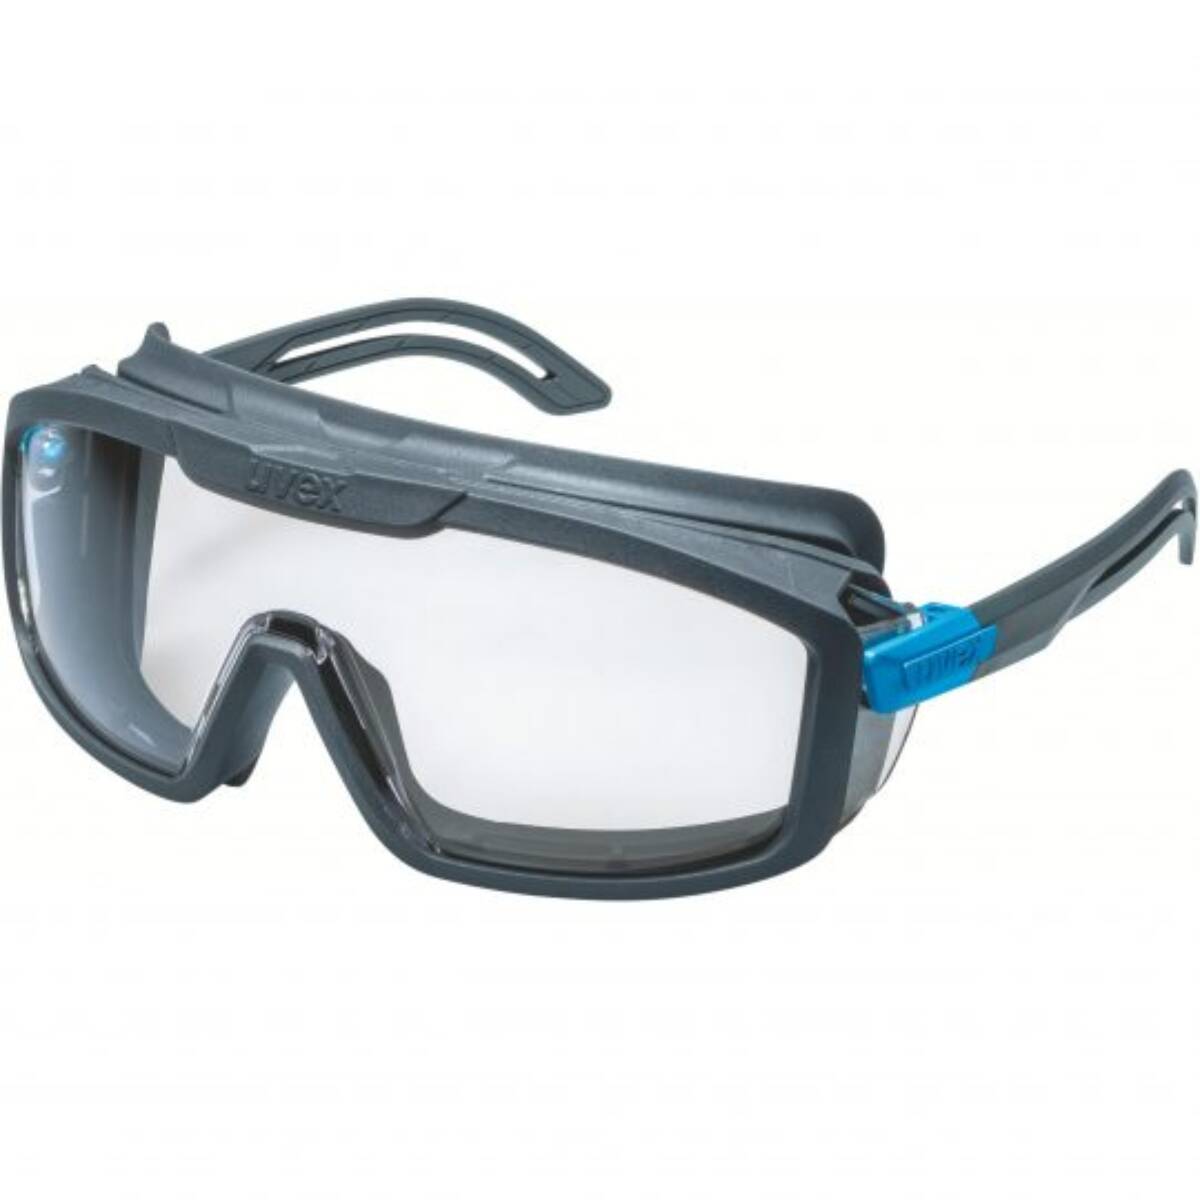 Brillen und Visiere - Vandeputte Safety Experts